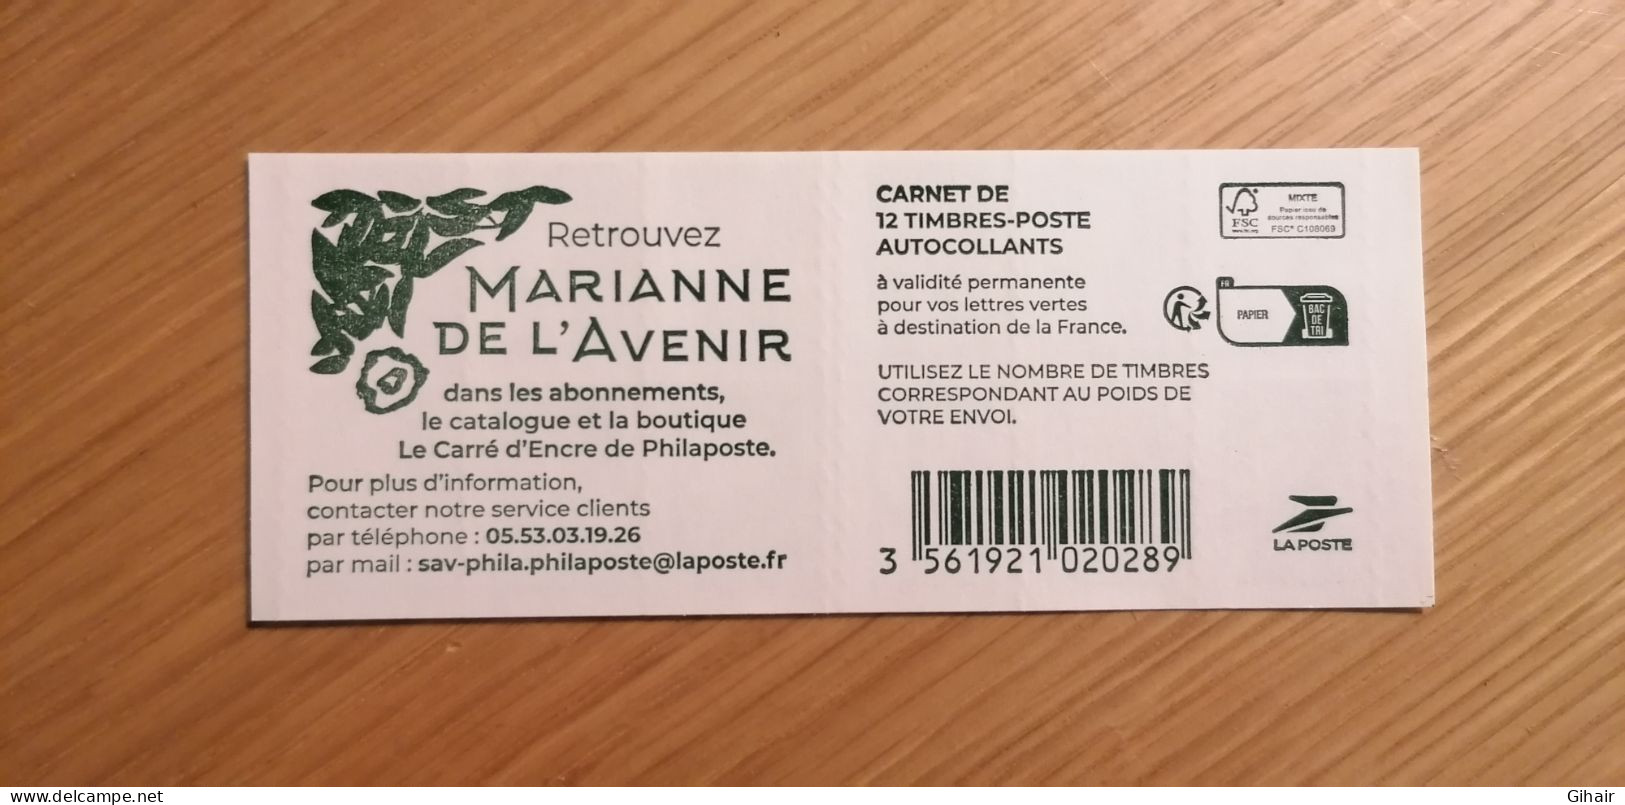 Timbre Marianne de l'avenir - Lettre verte - La Poste